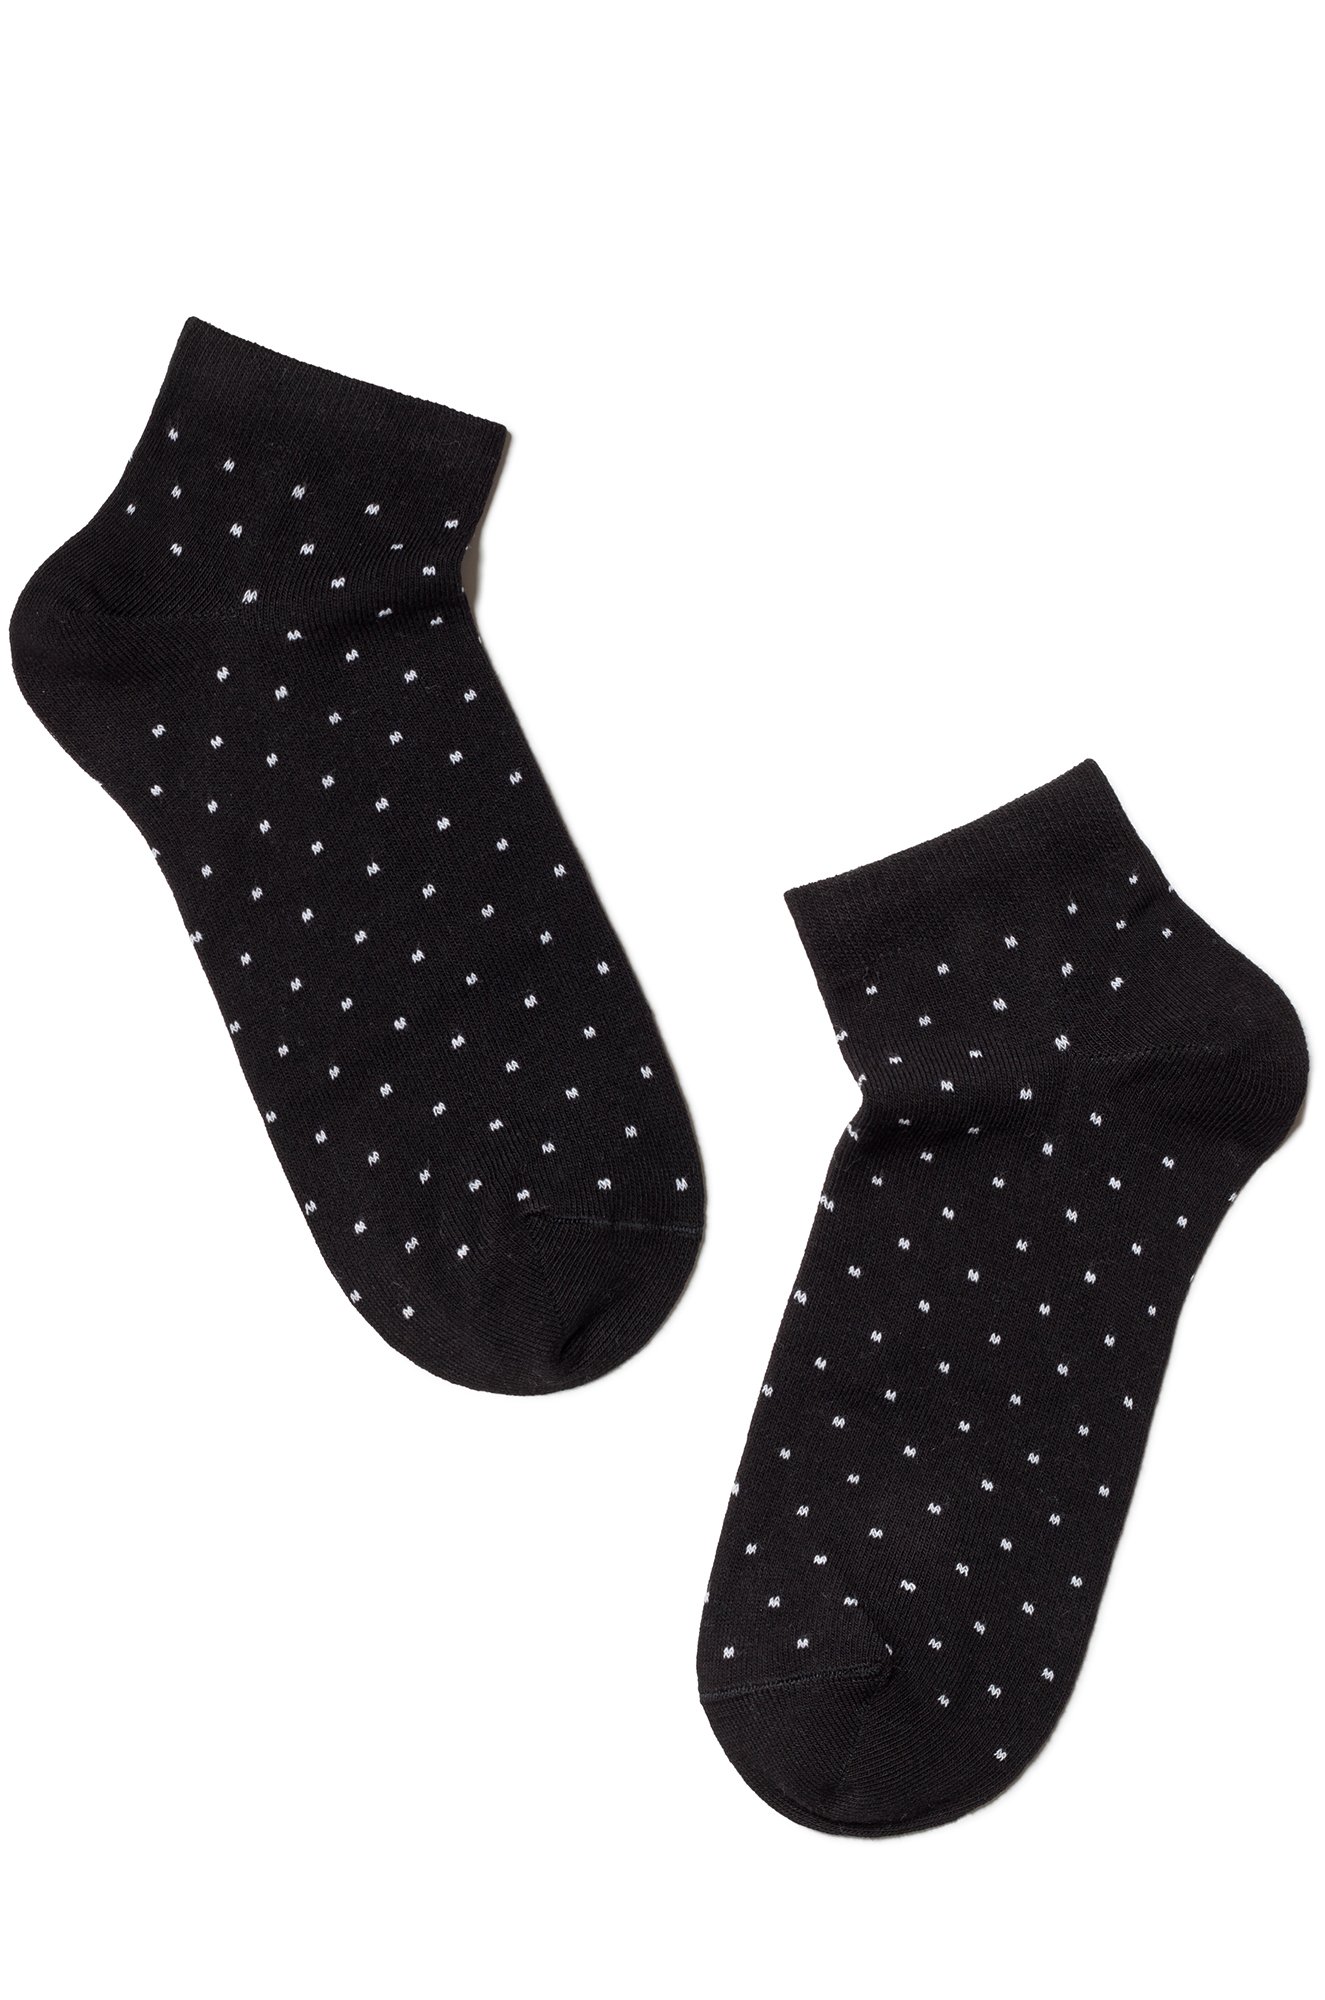 Набор женских носков 2 пары Esli